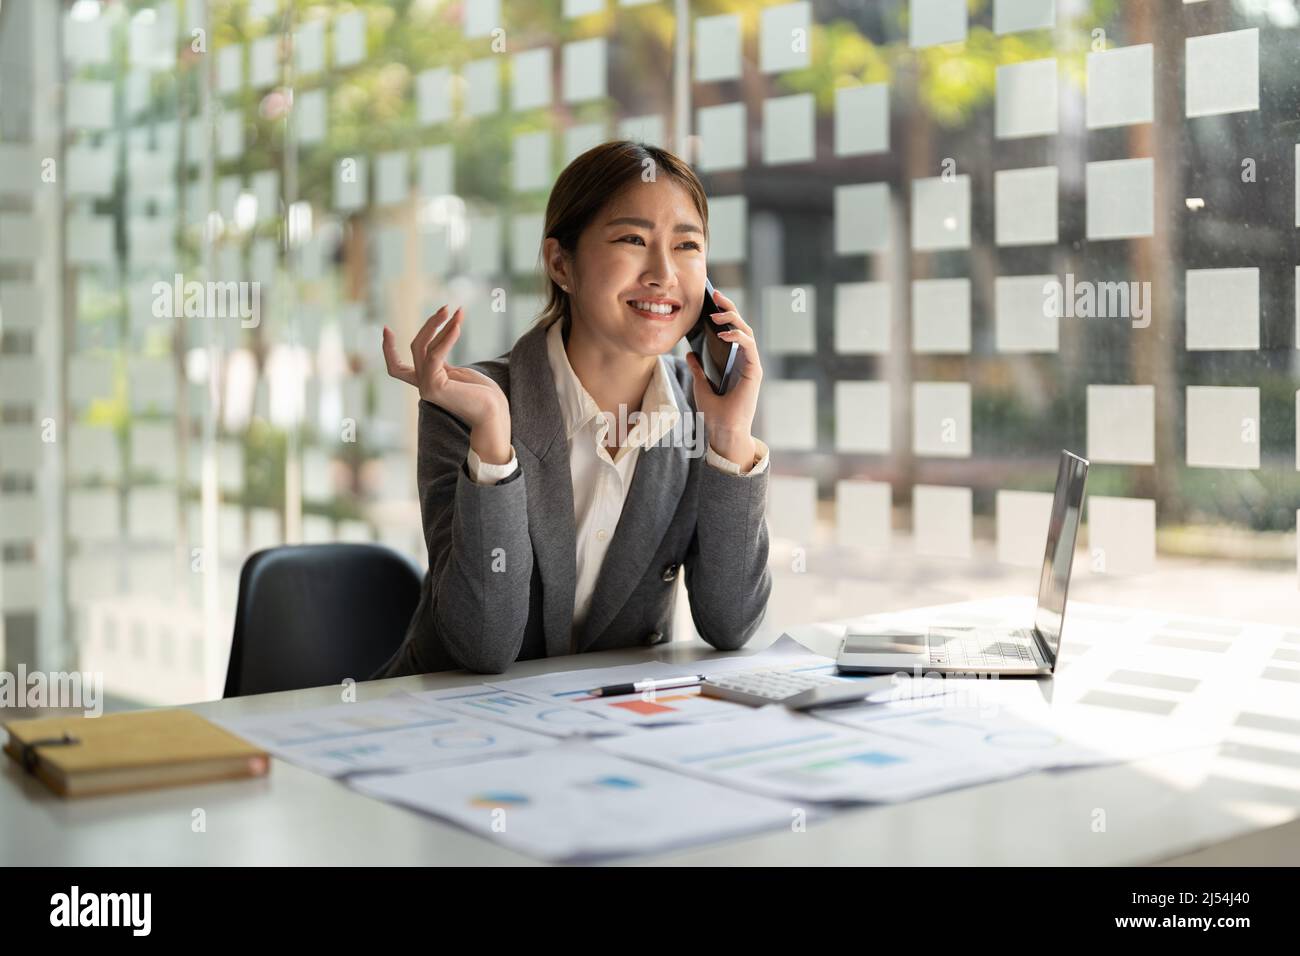 Lächelnde asiatische Frau im Gespräch Berater auf Handy im modernen Büro Stockfoto